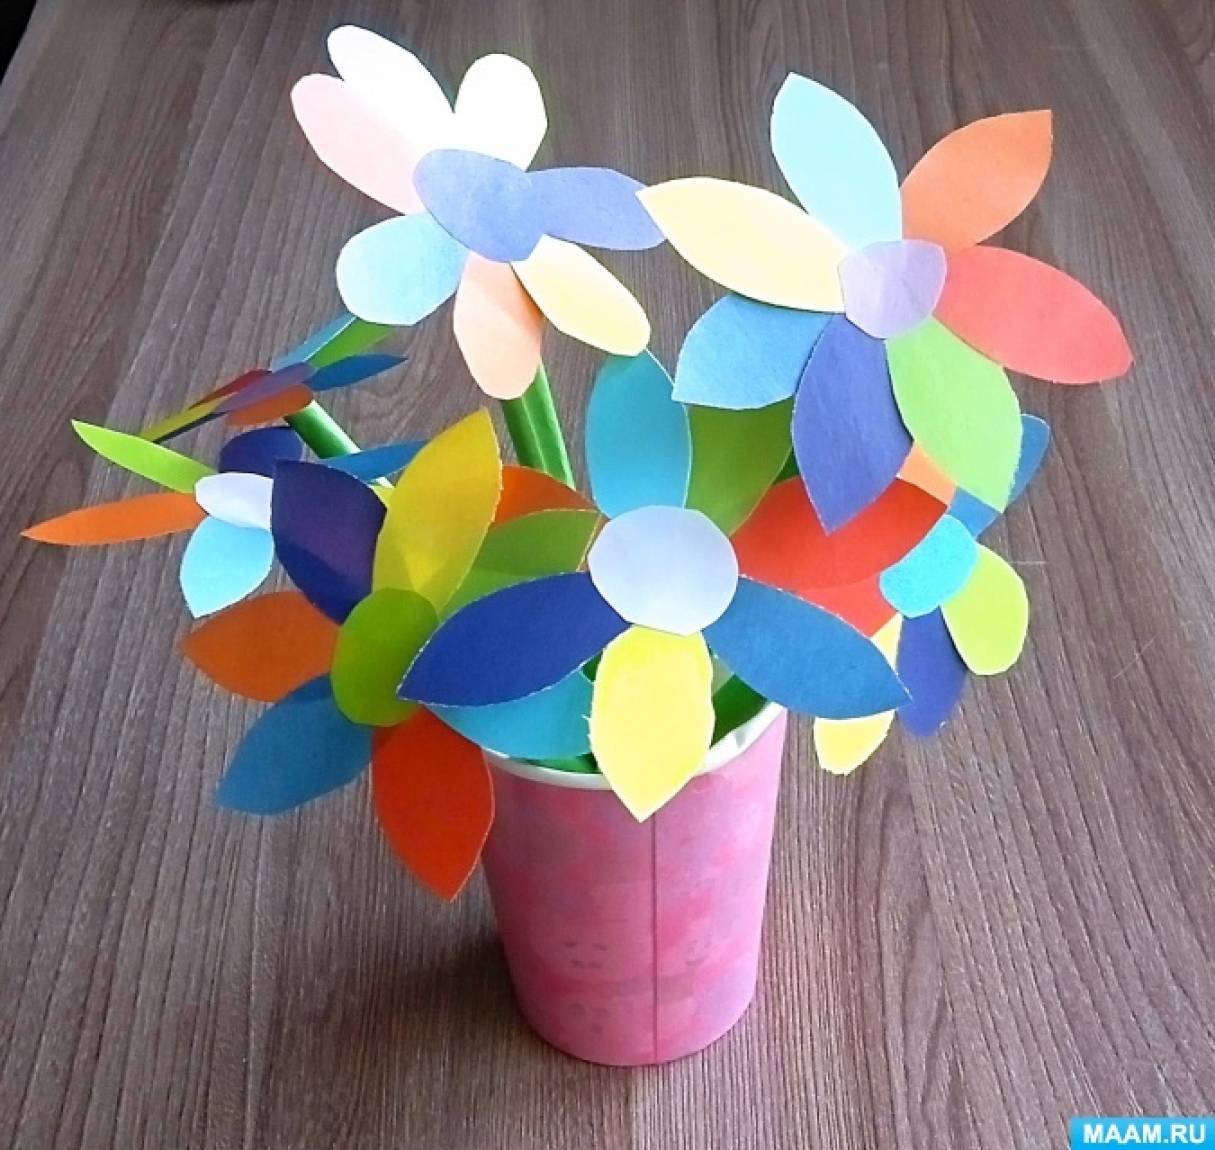 Конспект НОД по конструированию «Цветик — семицветик» в подготовительной группе с детьми с ЗПР